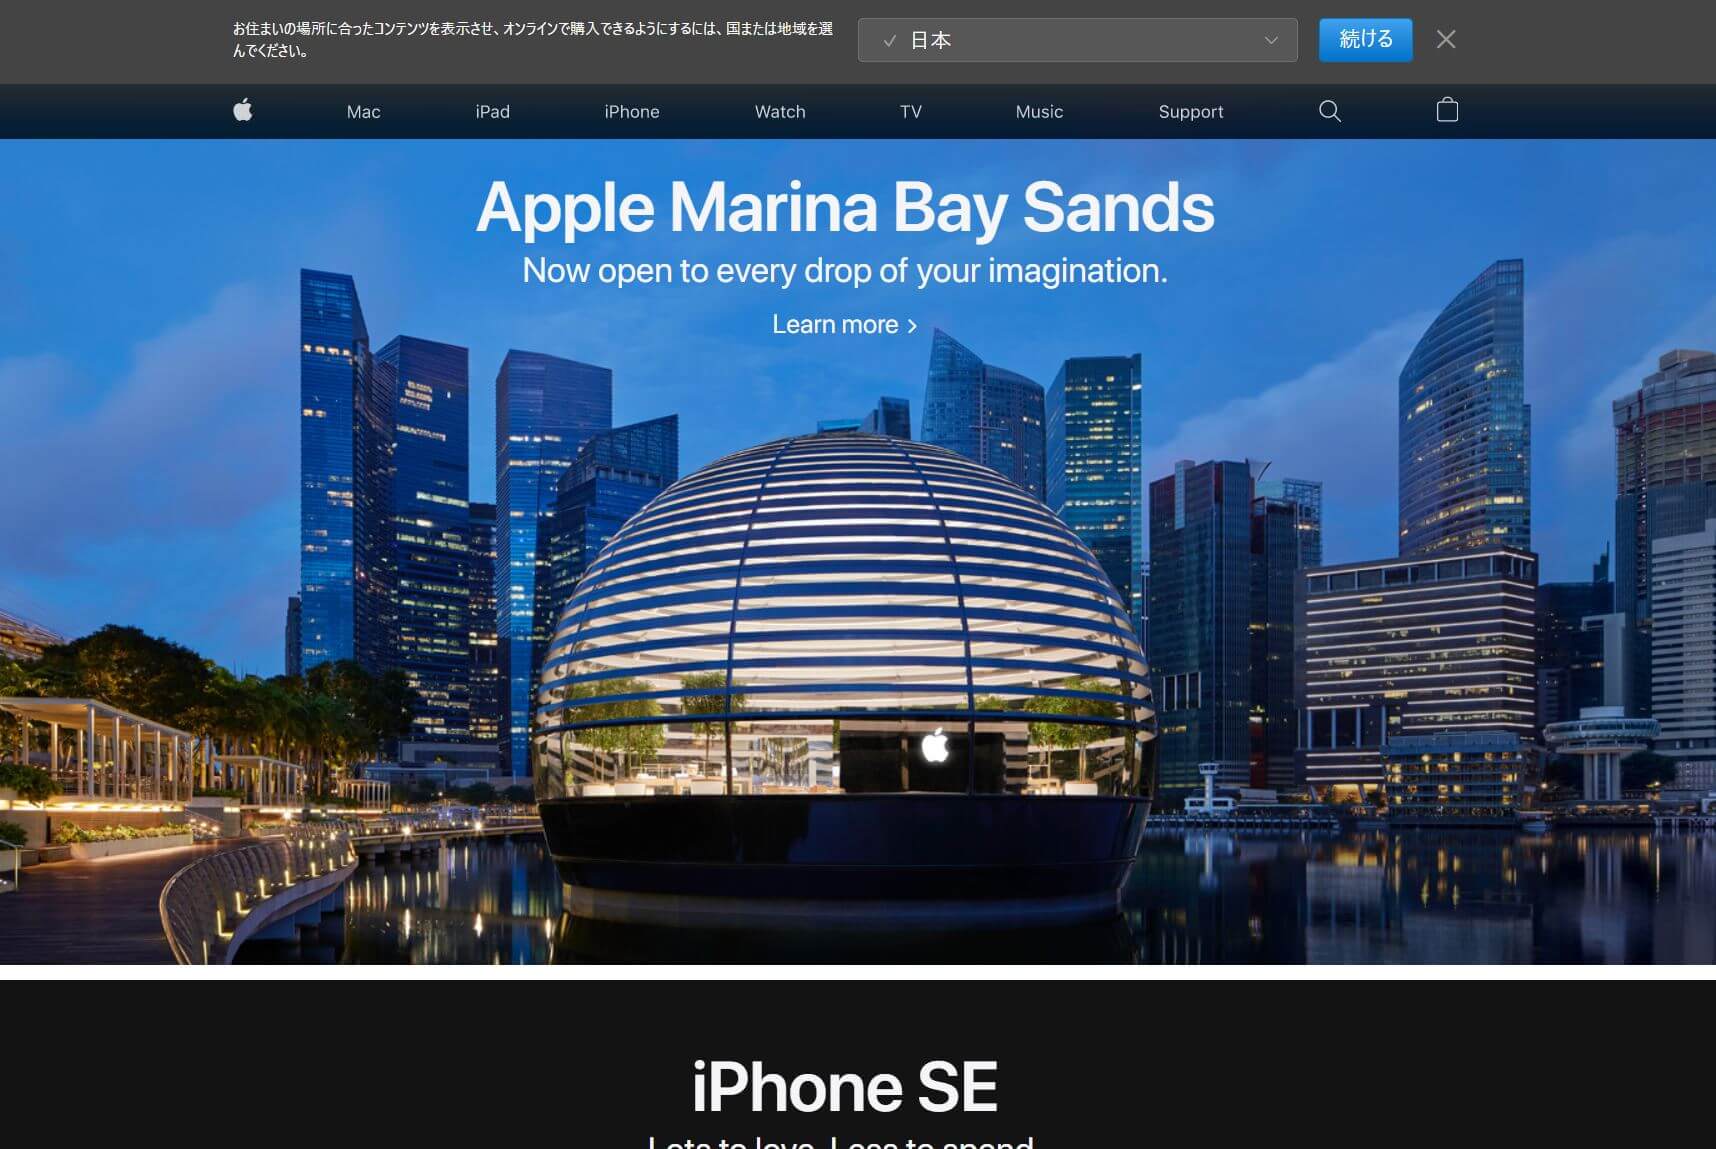 水に浮かぶアップルの新しいシンガポール旗艦店が9月10日オープン。Apple Marina Bay Sands